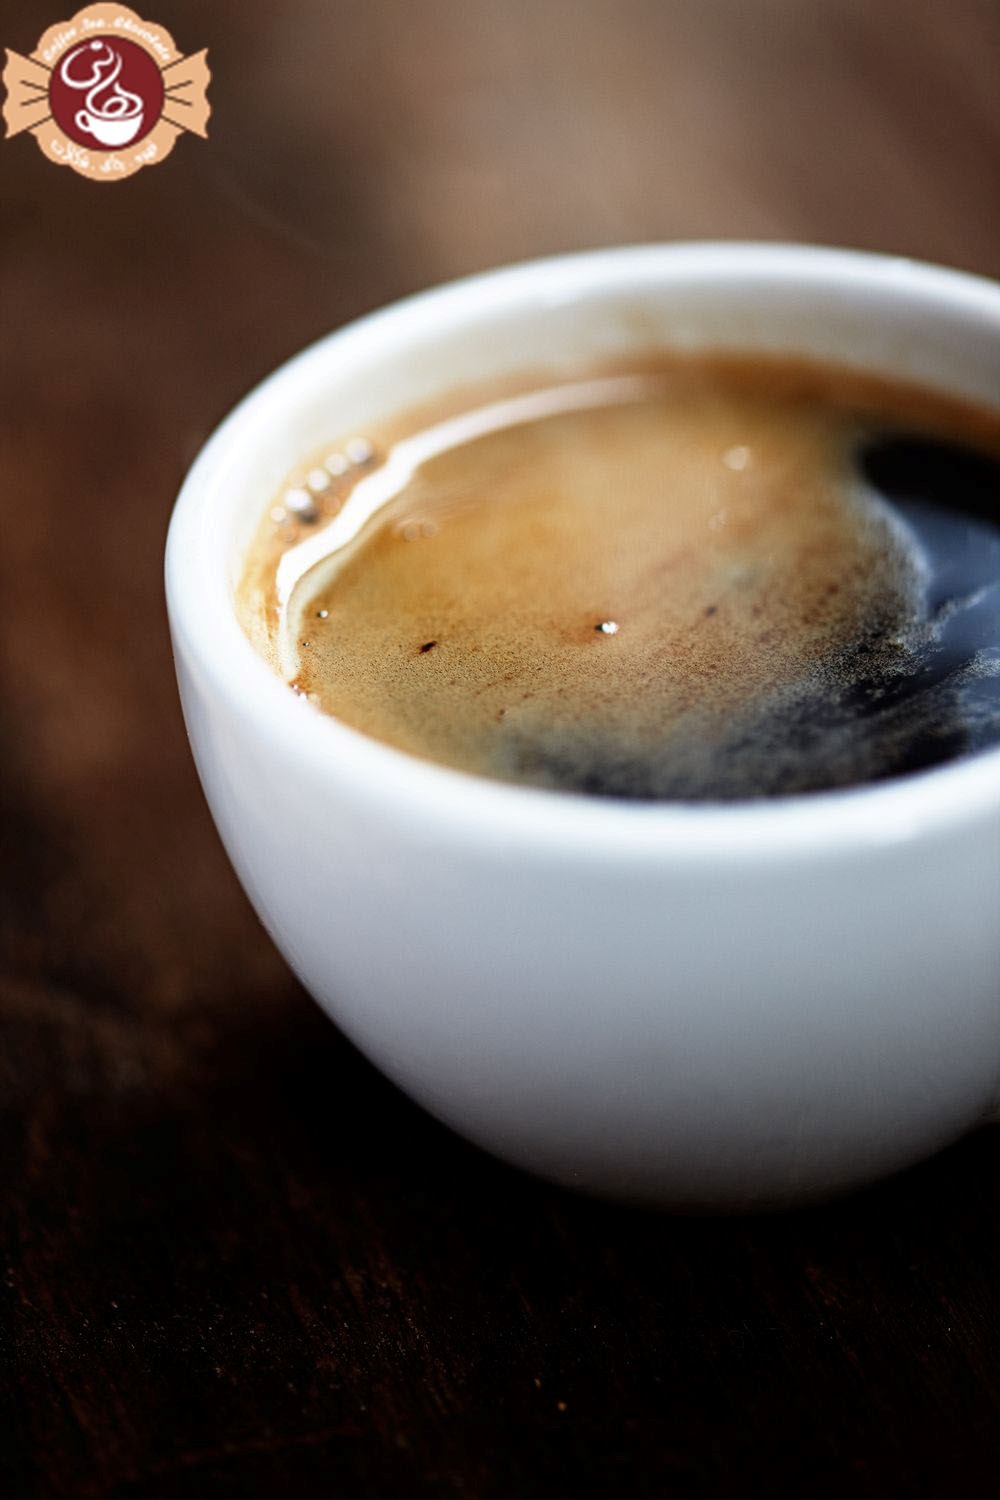 رایج ترین انواع قهوه در کافه